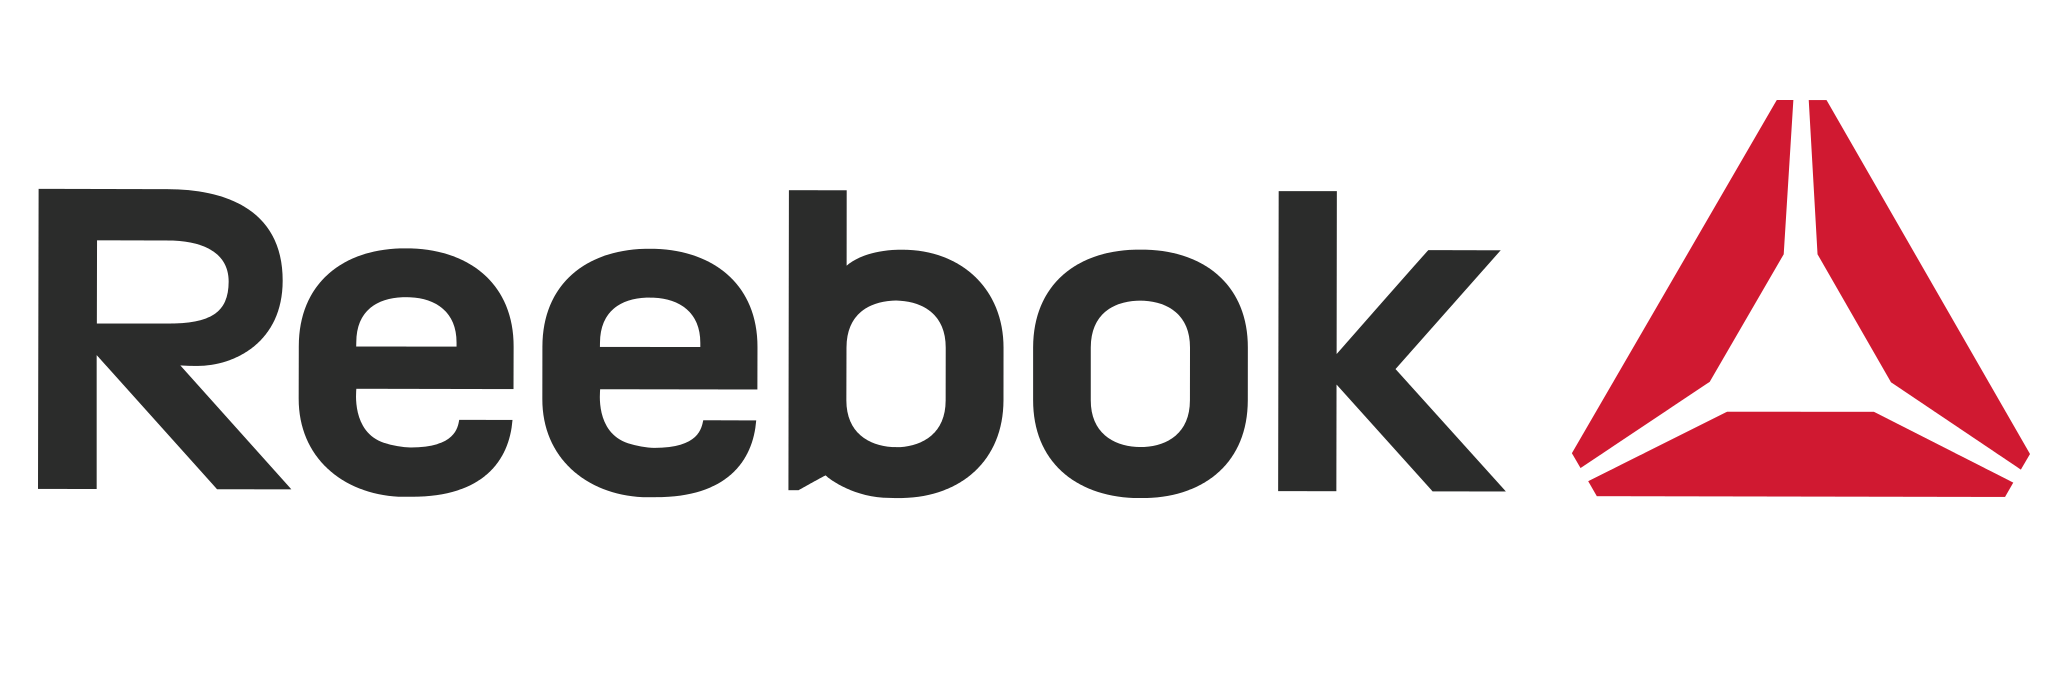 Reebok Logo Transparent Backg